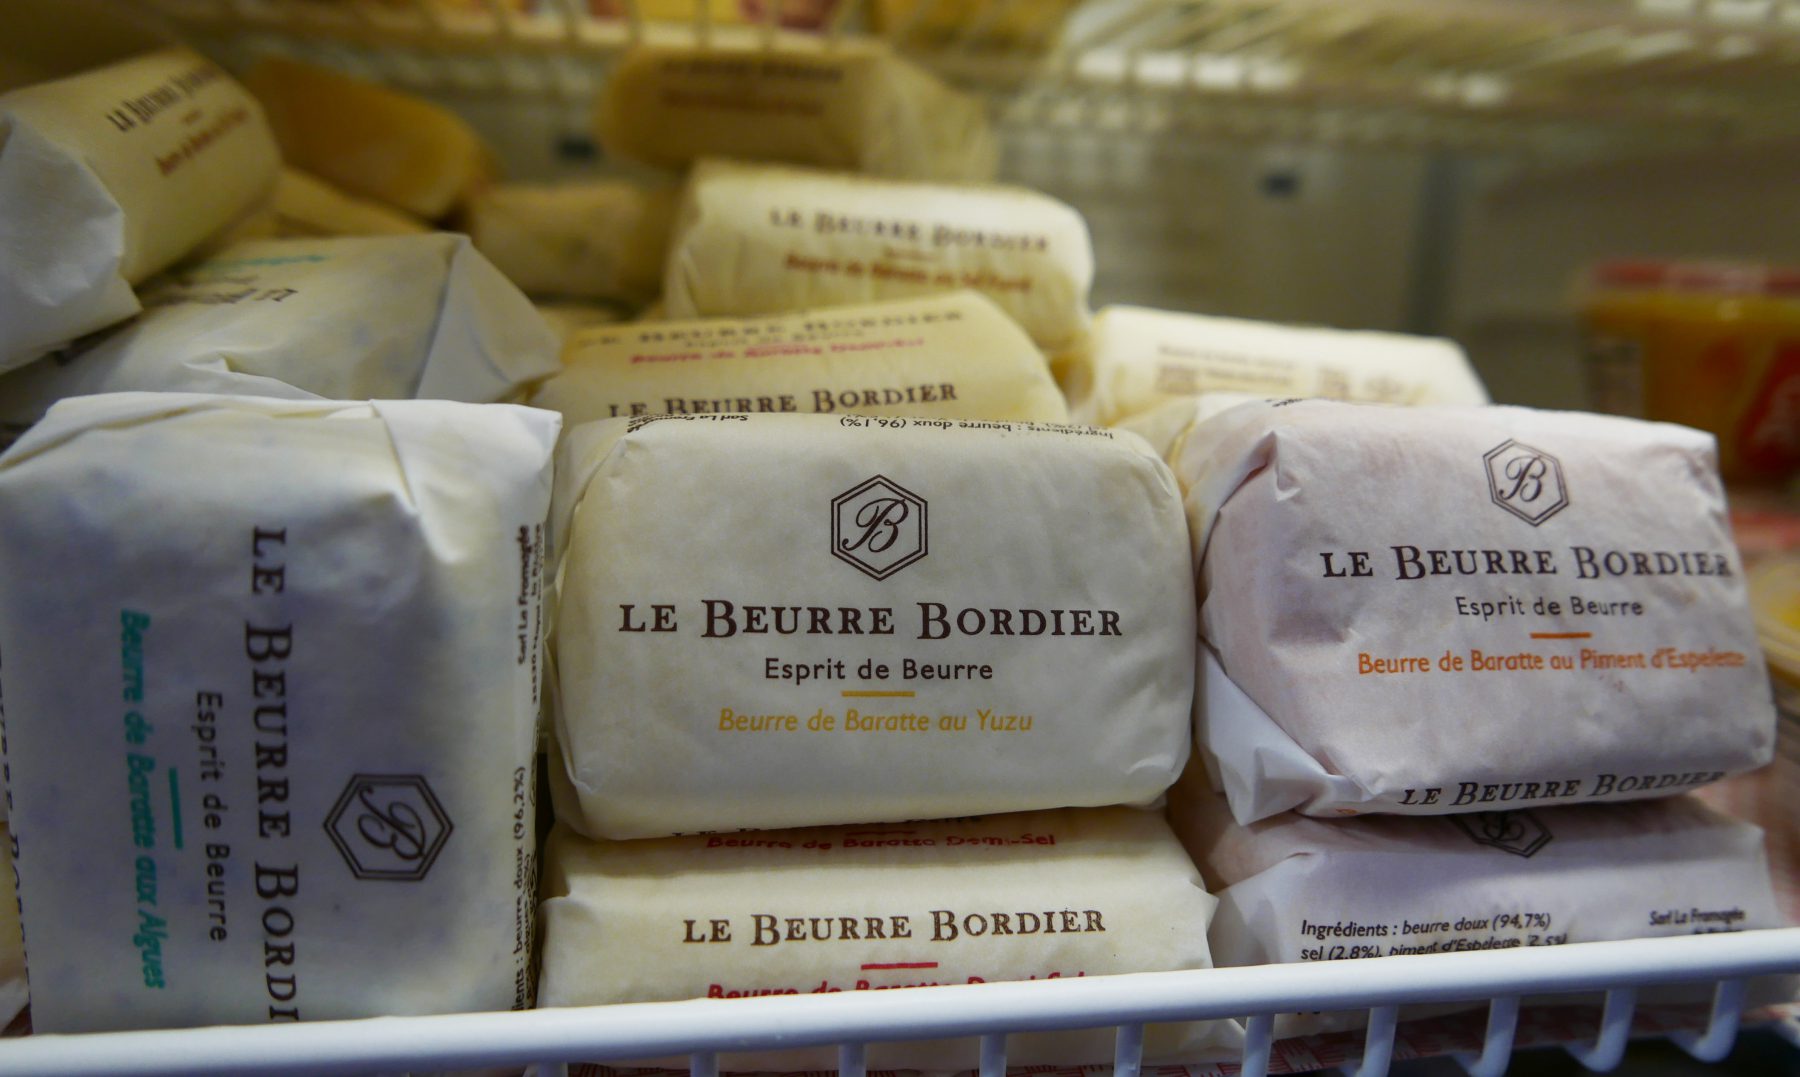 The "crème de la crème" of butter